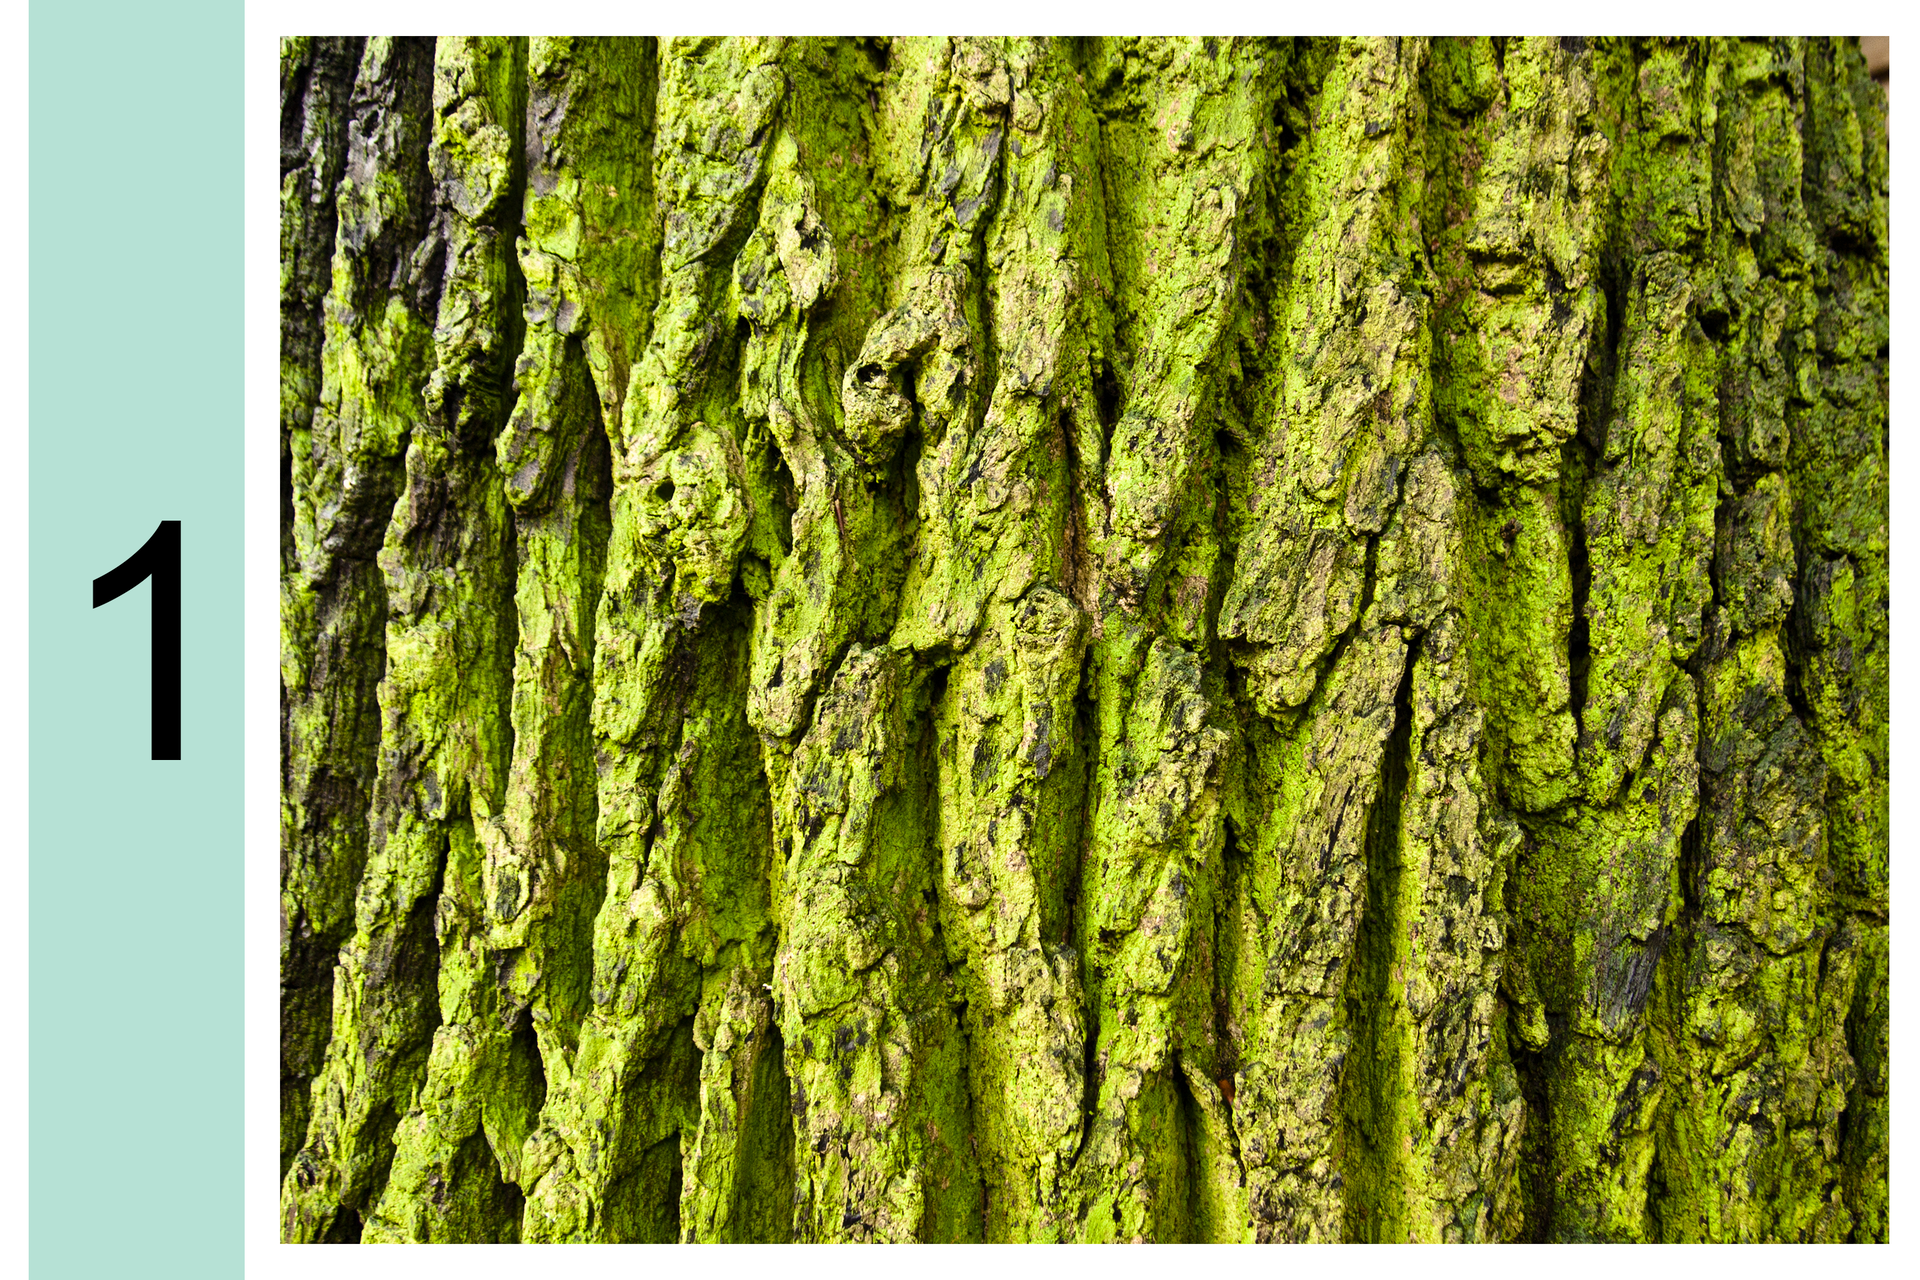 Fotografia przedstawia zbliżenie pnia drzewa. Z lewej cyfra 1. Na korze widoczny zielony nalot glonów. Oznacza to, że powietrze jest bardzo silnie zanieczyszczone.